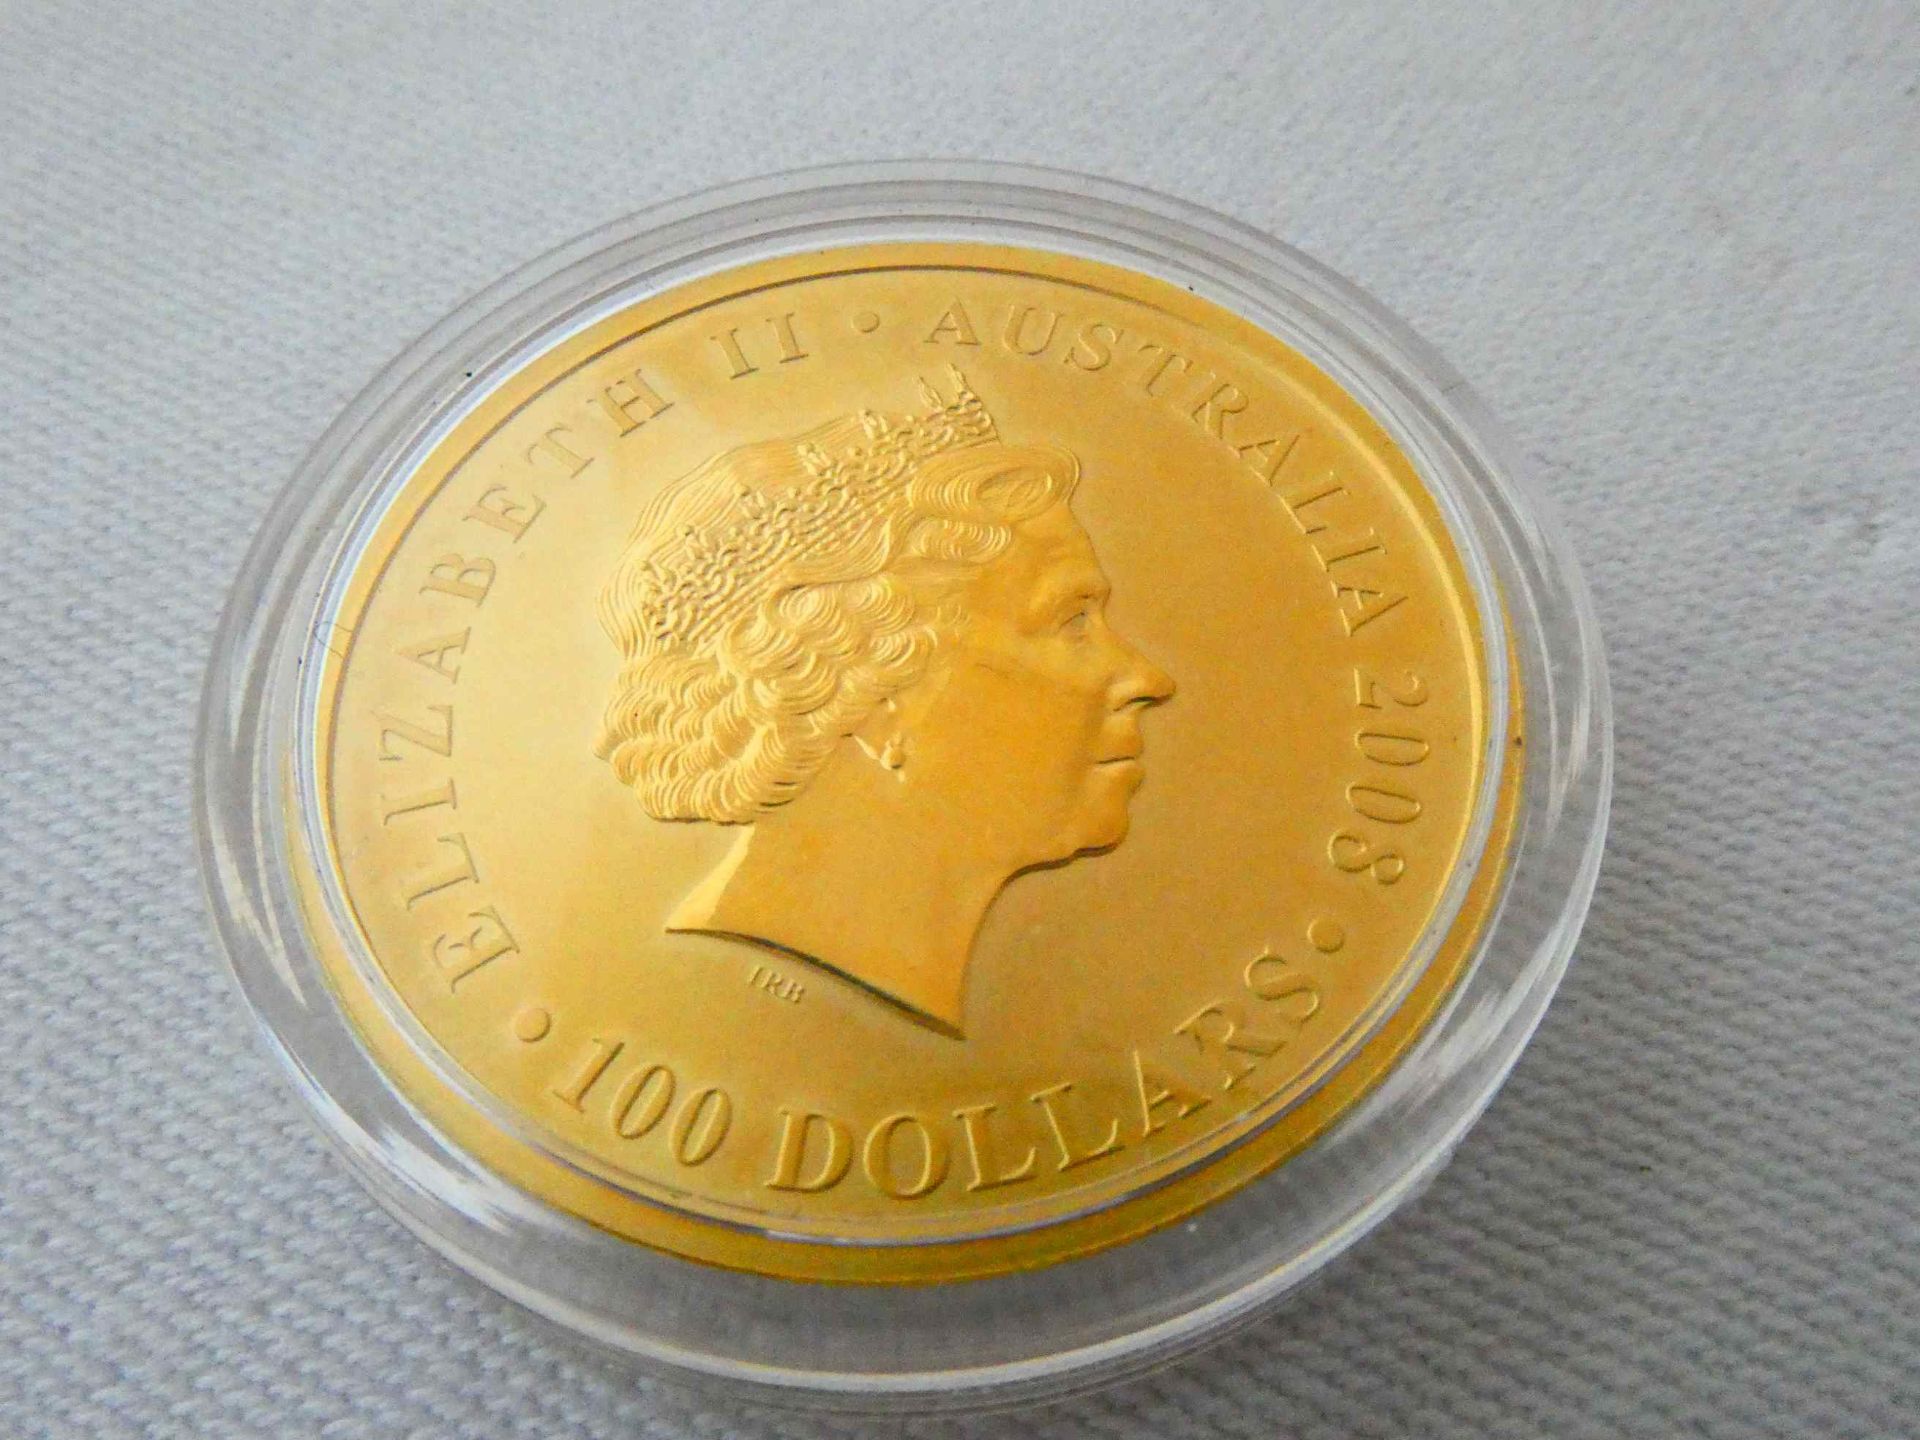 Goldmünze Elisabeth II Australien 2008 in 999 Gold